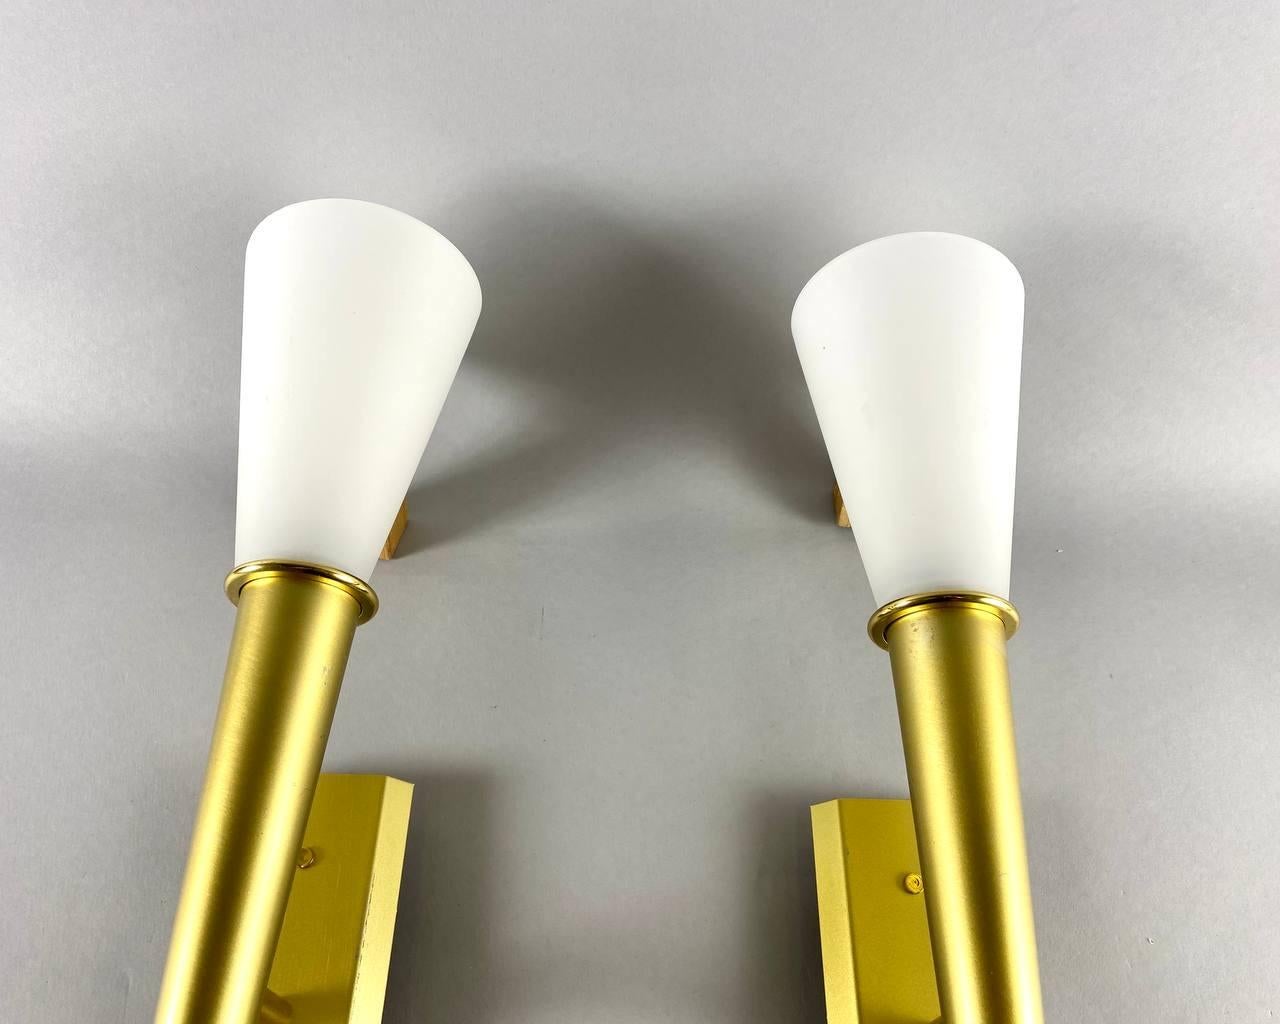 Elegantes Wandleuchtenpaar aus weißem Glas in konischer Form mit goldfarbenem, gebürstetem Metallrahmen von WOFI Leuchten, Deutschland.

Ein einfaches und elegantes Design. Weißes Glas und goldfarbenes, gebürstetes Metall vereinen sich zu diesem